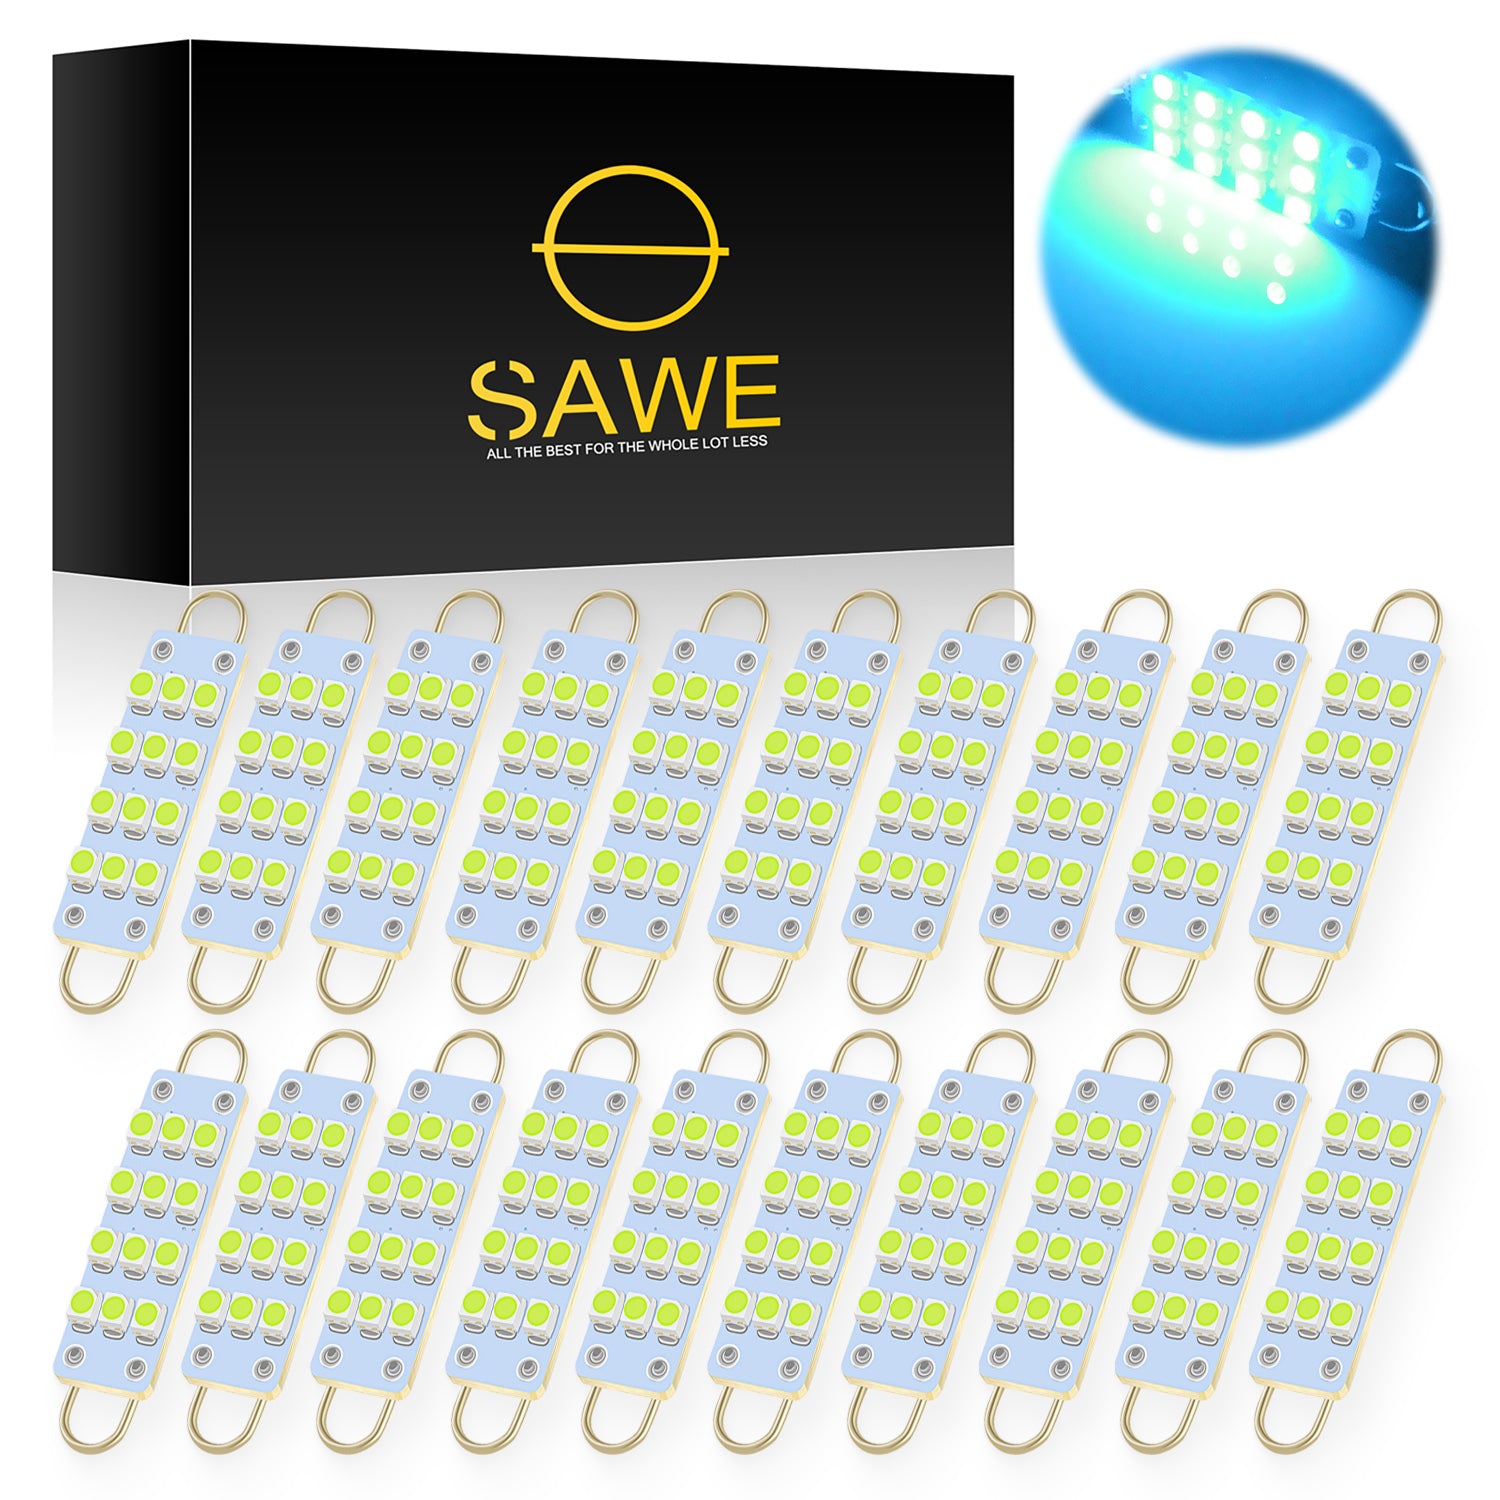 SAWE ®  561 563 567 211-2 212-2 LED Bulb Festoon 44mm 12smd Rigid Loop Interior Door Trunk LED Lights - Ice Blue